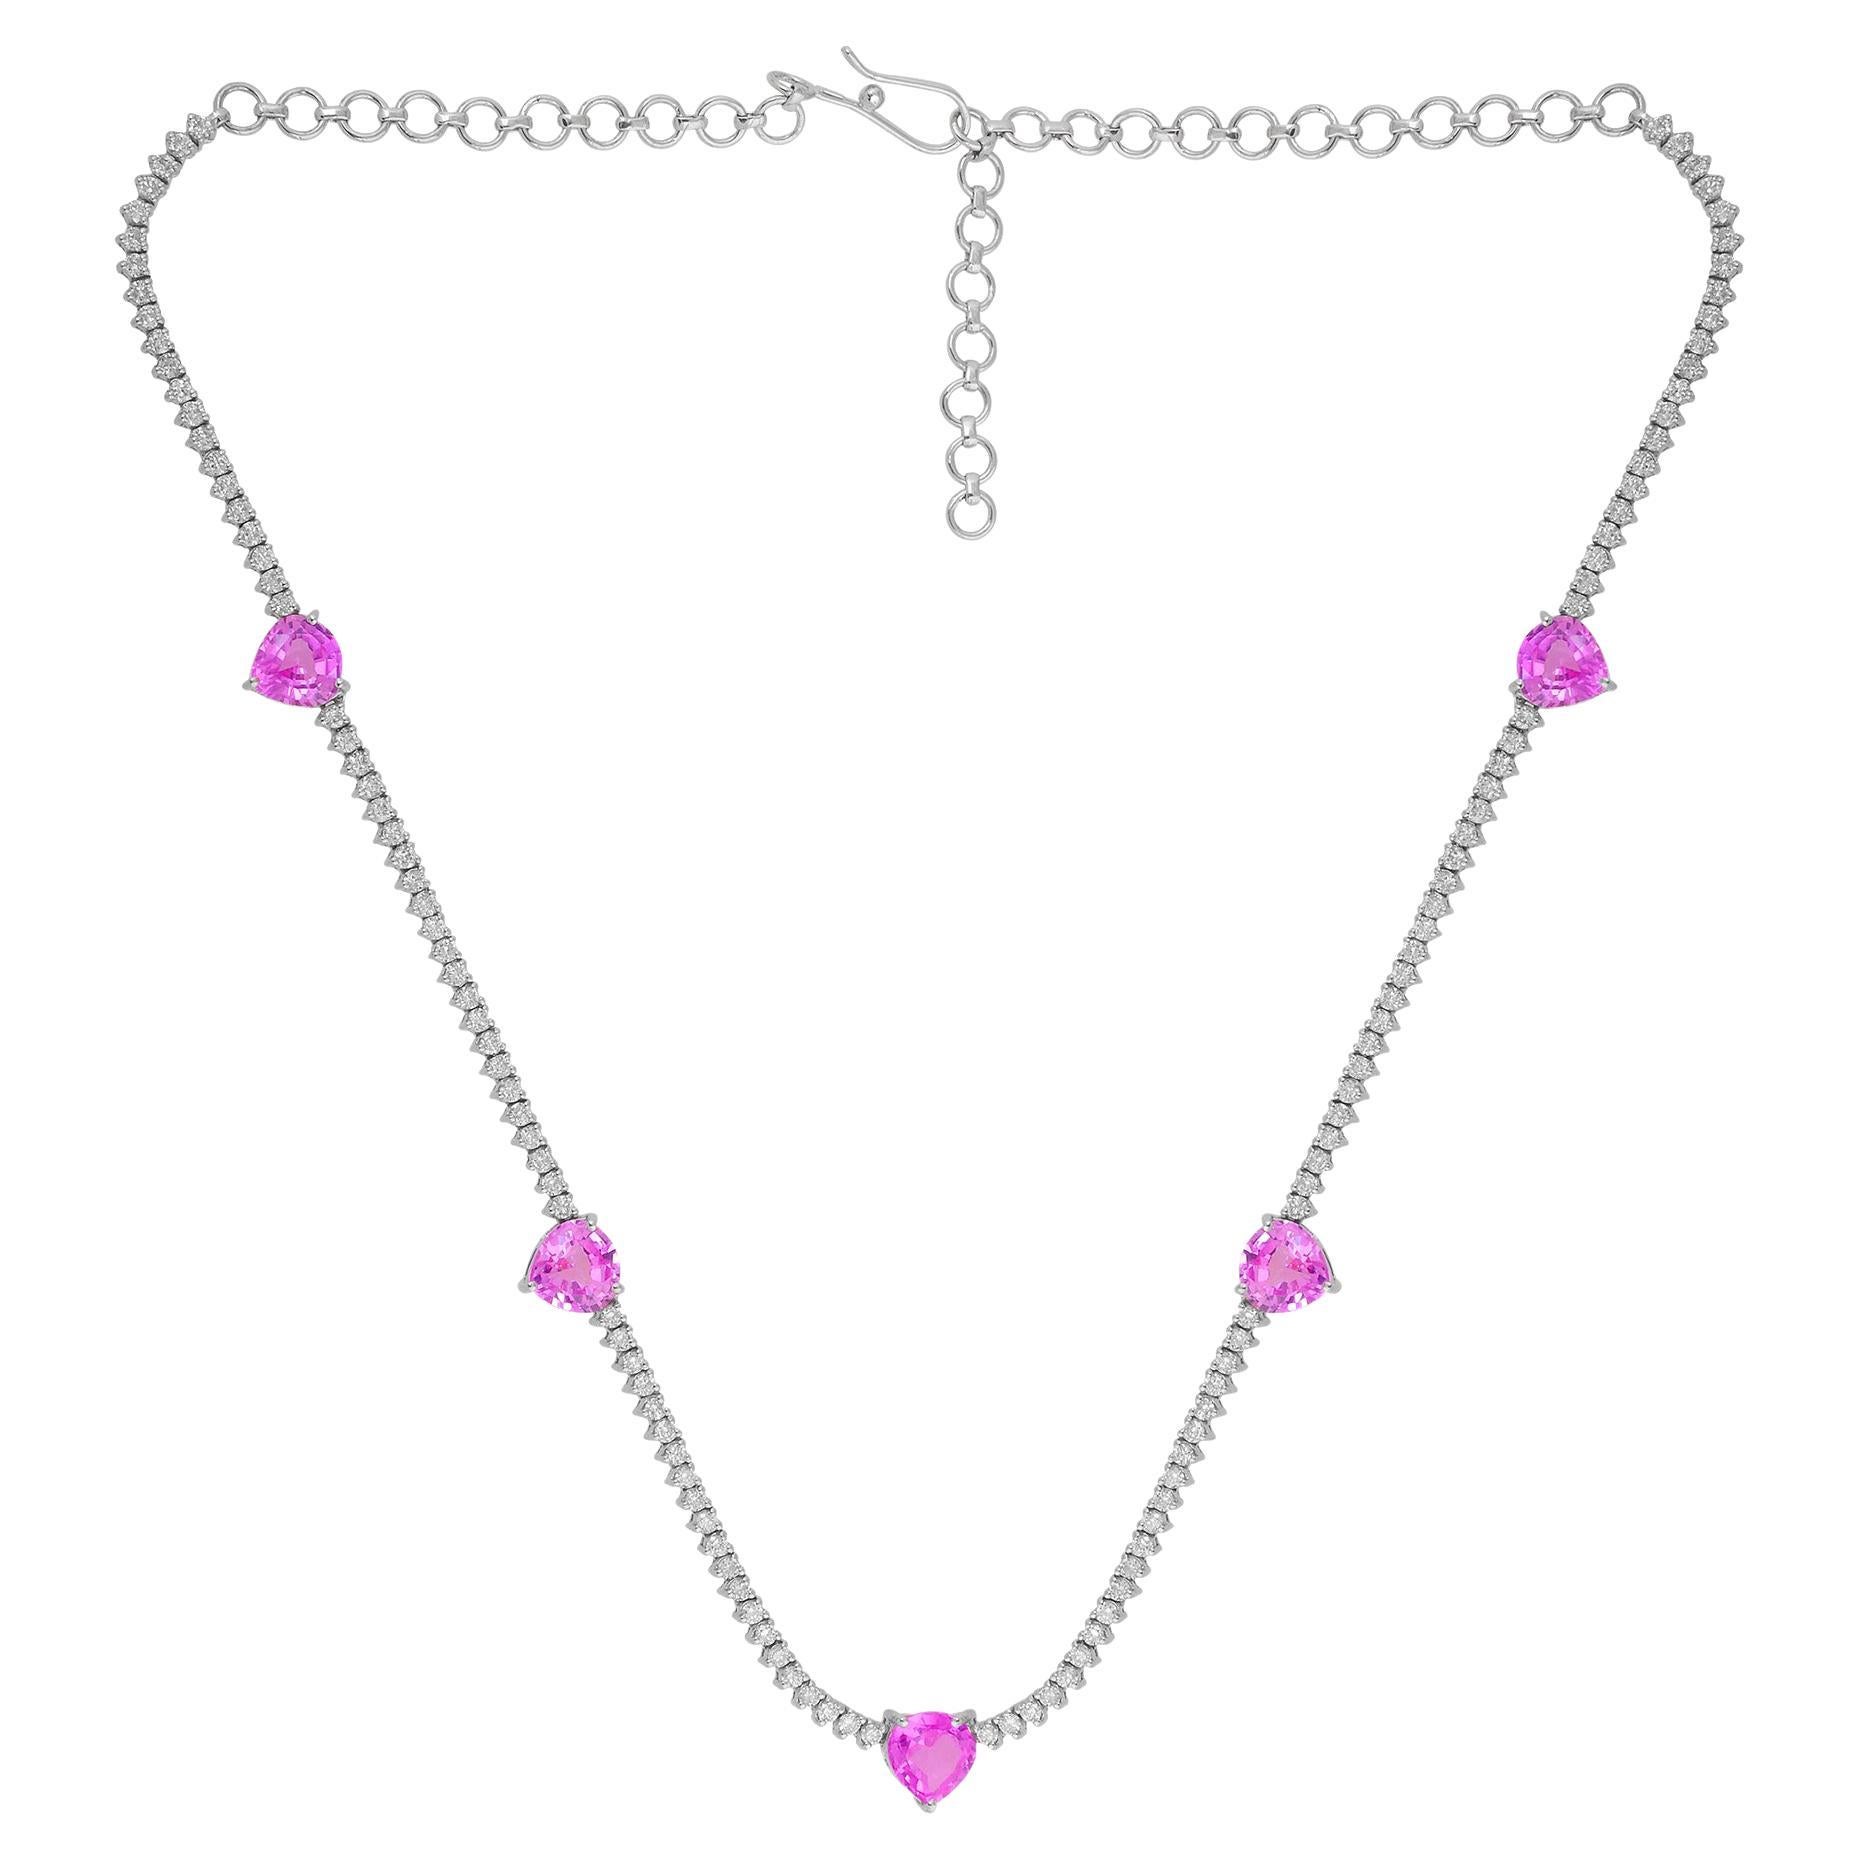 Halskette in Herzform mit rosa Edelsteinen und Diamanten aus 14 Karat Weißgold, handgefertigt